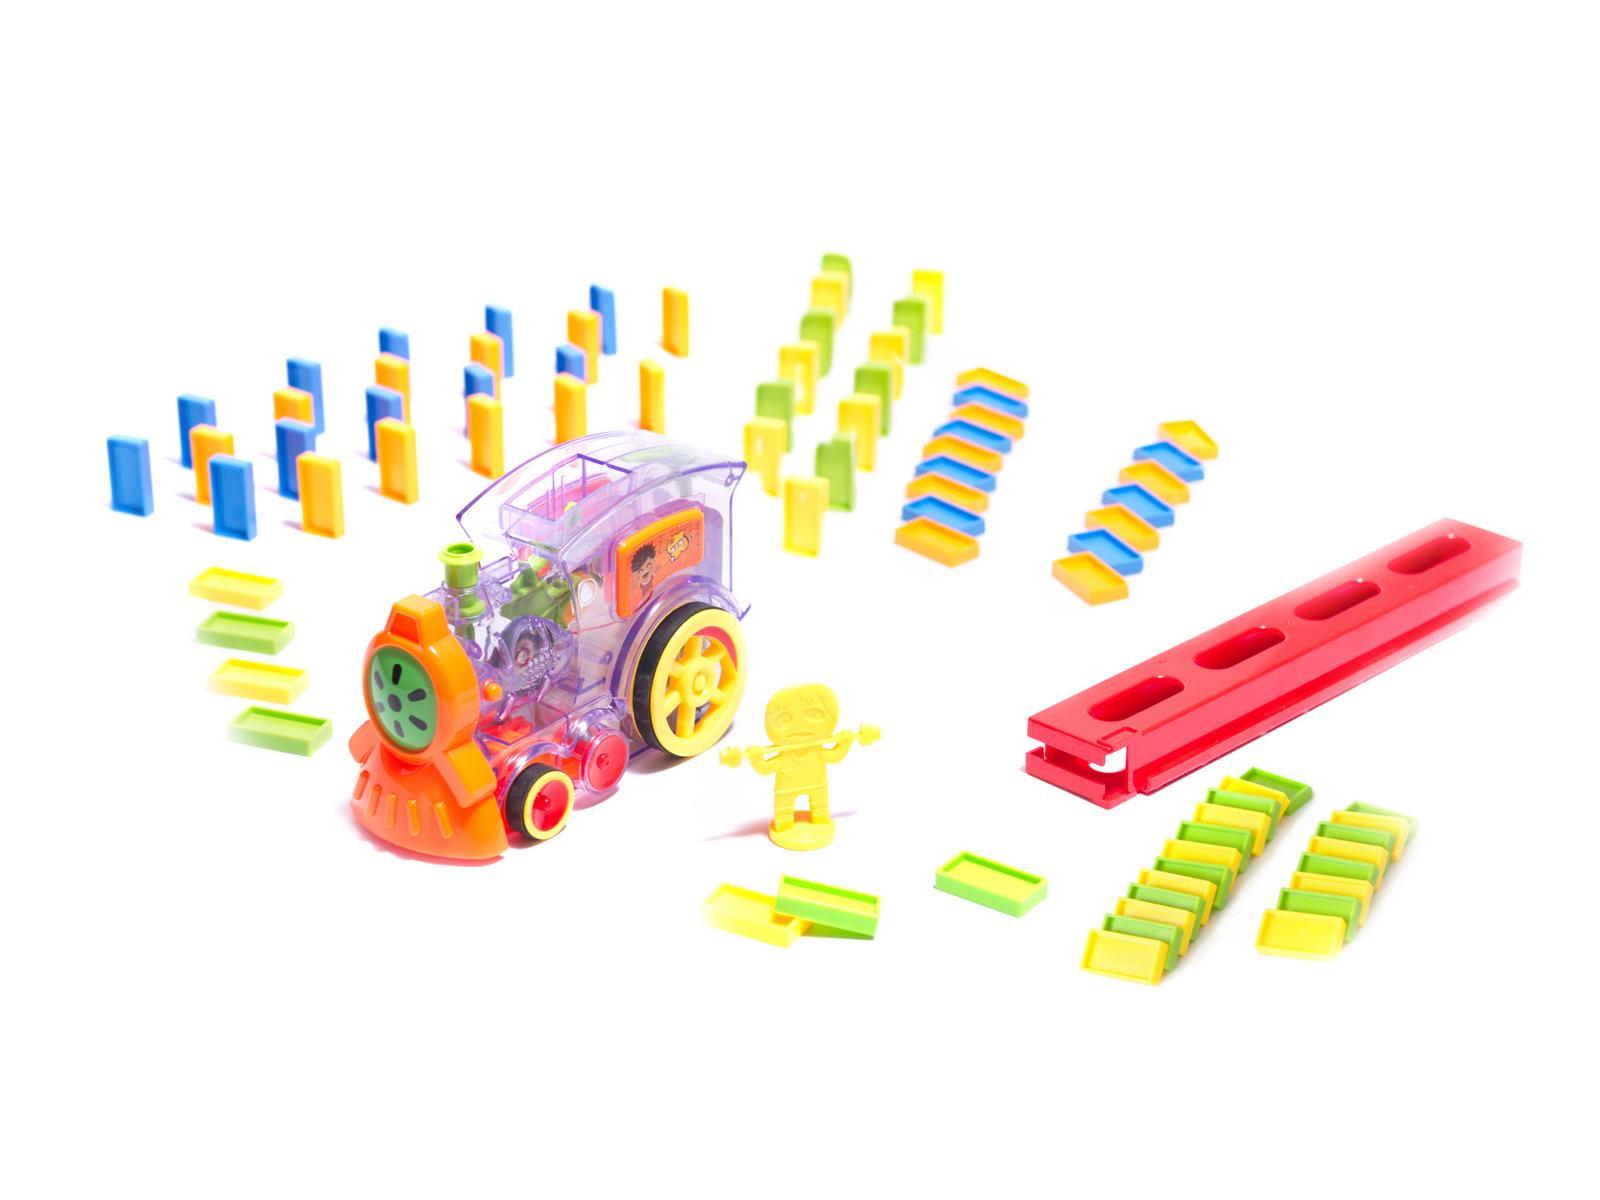 Pociąg Lokomotywa interaktywna układanka domino z kolejką zabawka dla dzieci 16x7x10 cm nr. 2